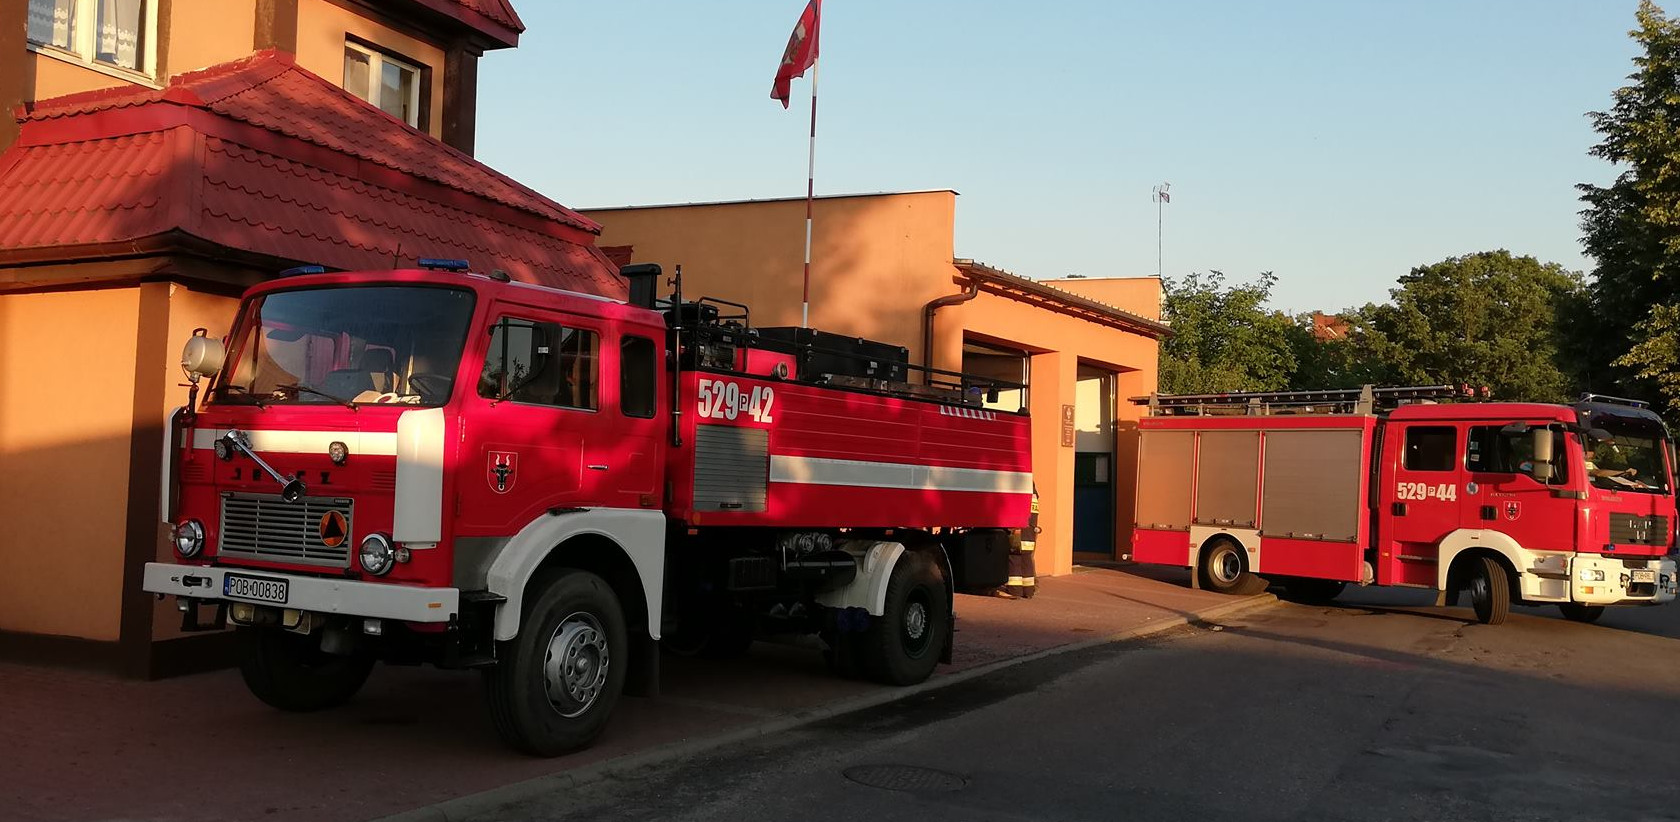 Rządowa dotacja dla ryczywolskich strażaków